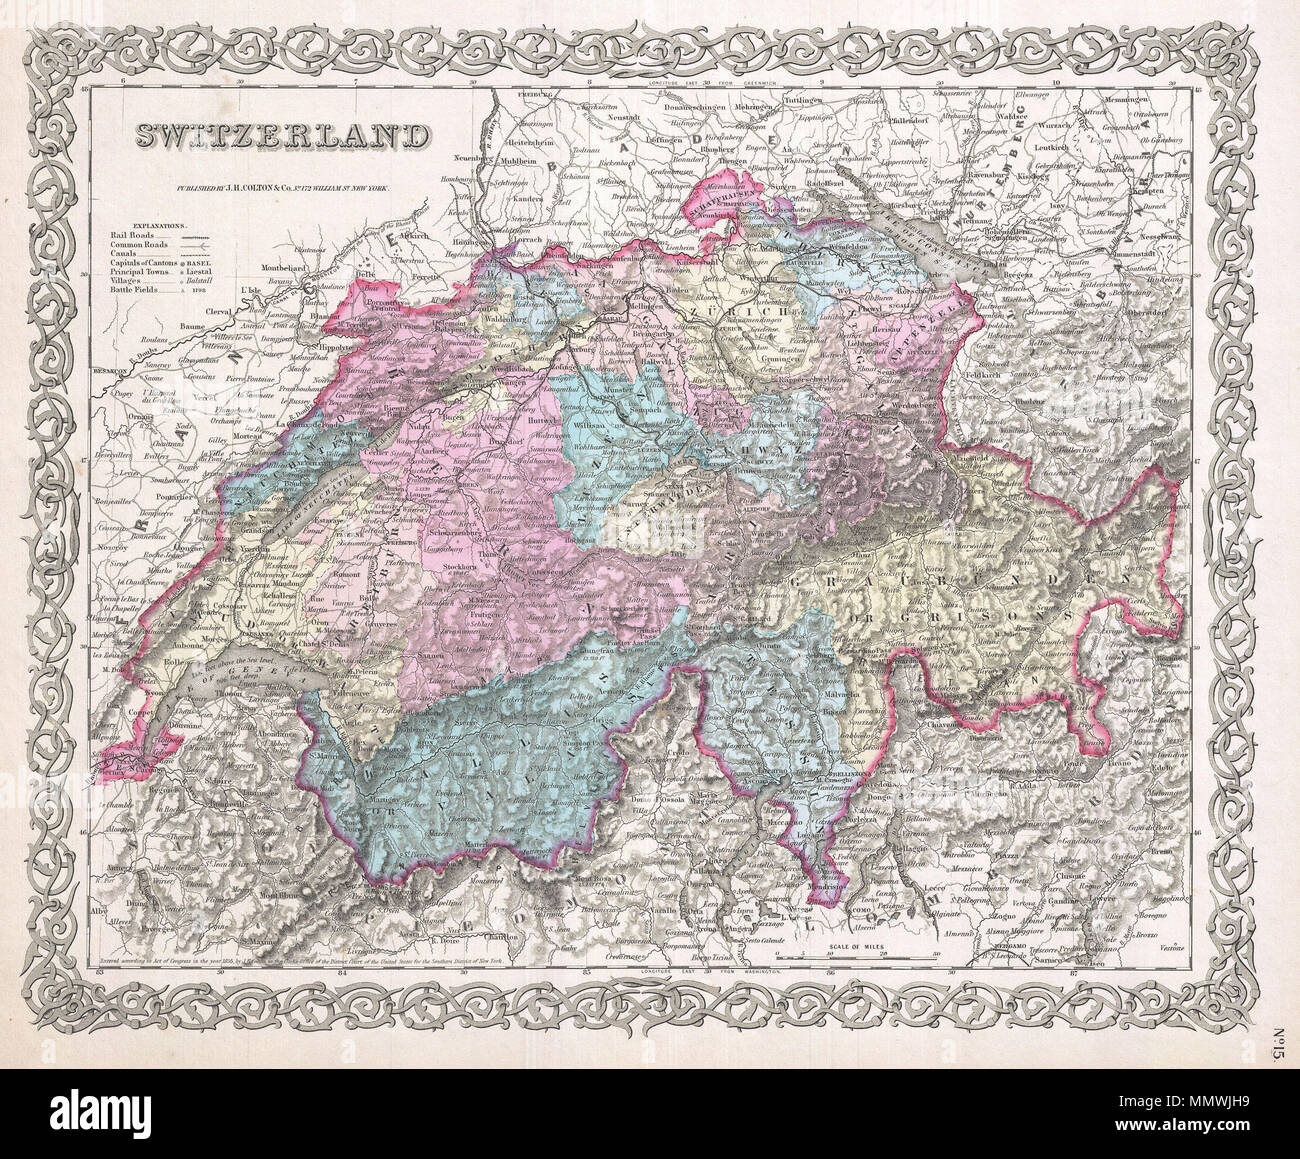 Englisch: Eine schöne 1855 Erste Ausgabe Beispiel Coltons Karte der  Schweiz. Die Farbe je nach Kanton codiert. Im gesamten, Colton  identifiziert verschiedene Städte, Dörfer, Flüsse und eine Auswahl an  zusätzlichen topographischen